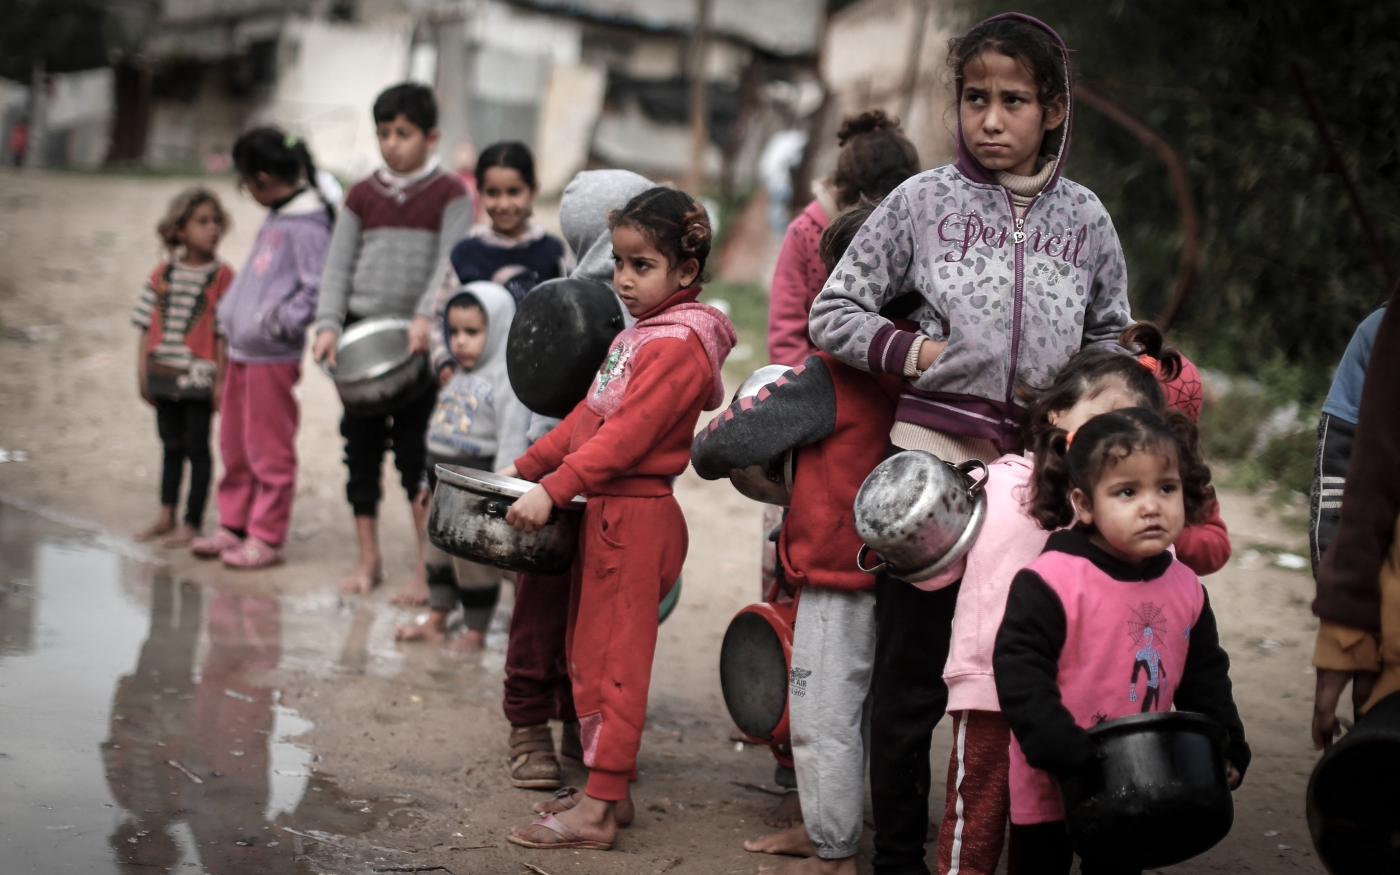 Des enfants palestiniens portant des faitouts attendent de recevoir un repas dans un quartier pauvre de Gaza, le 28 janvier 2021 (AFP)